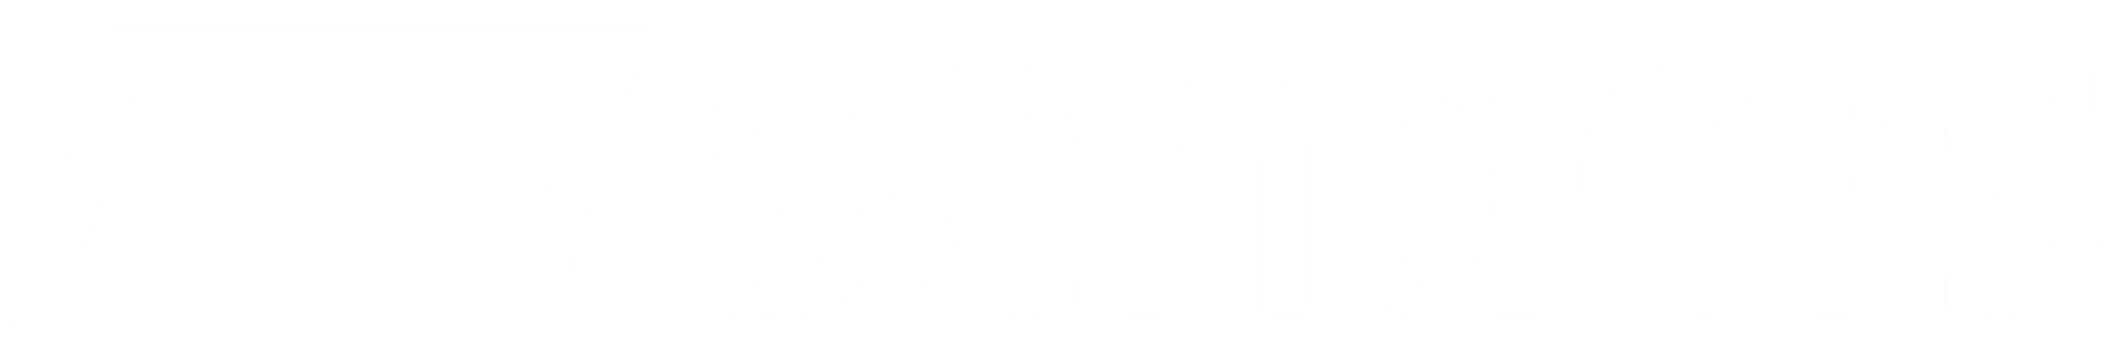 Senders logo